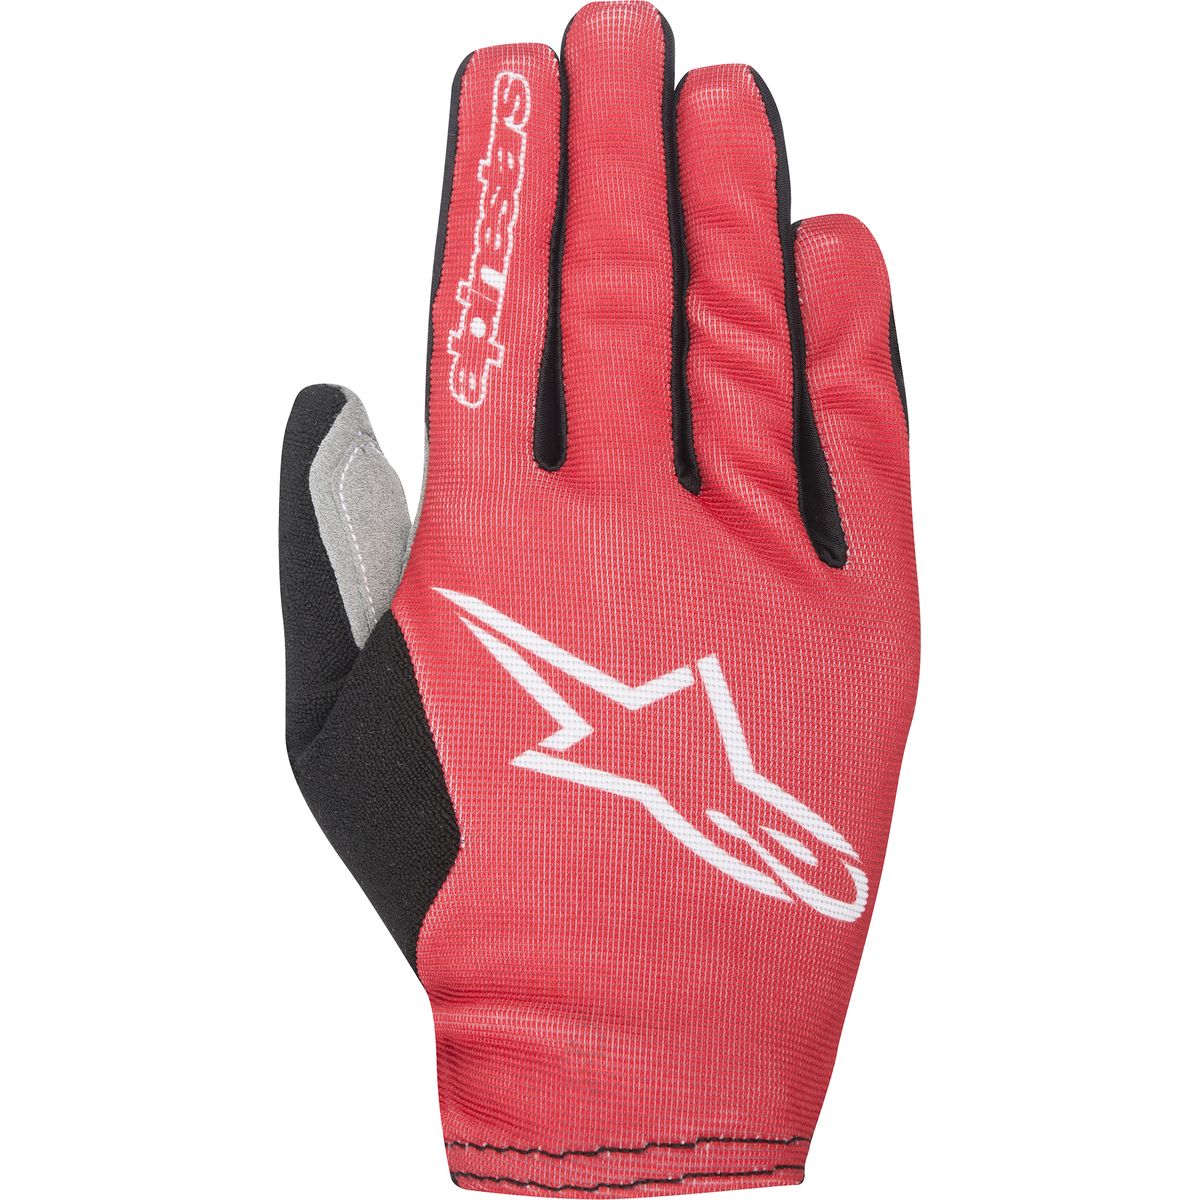 Alpinestars Aero 2 Gloves Men's